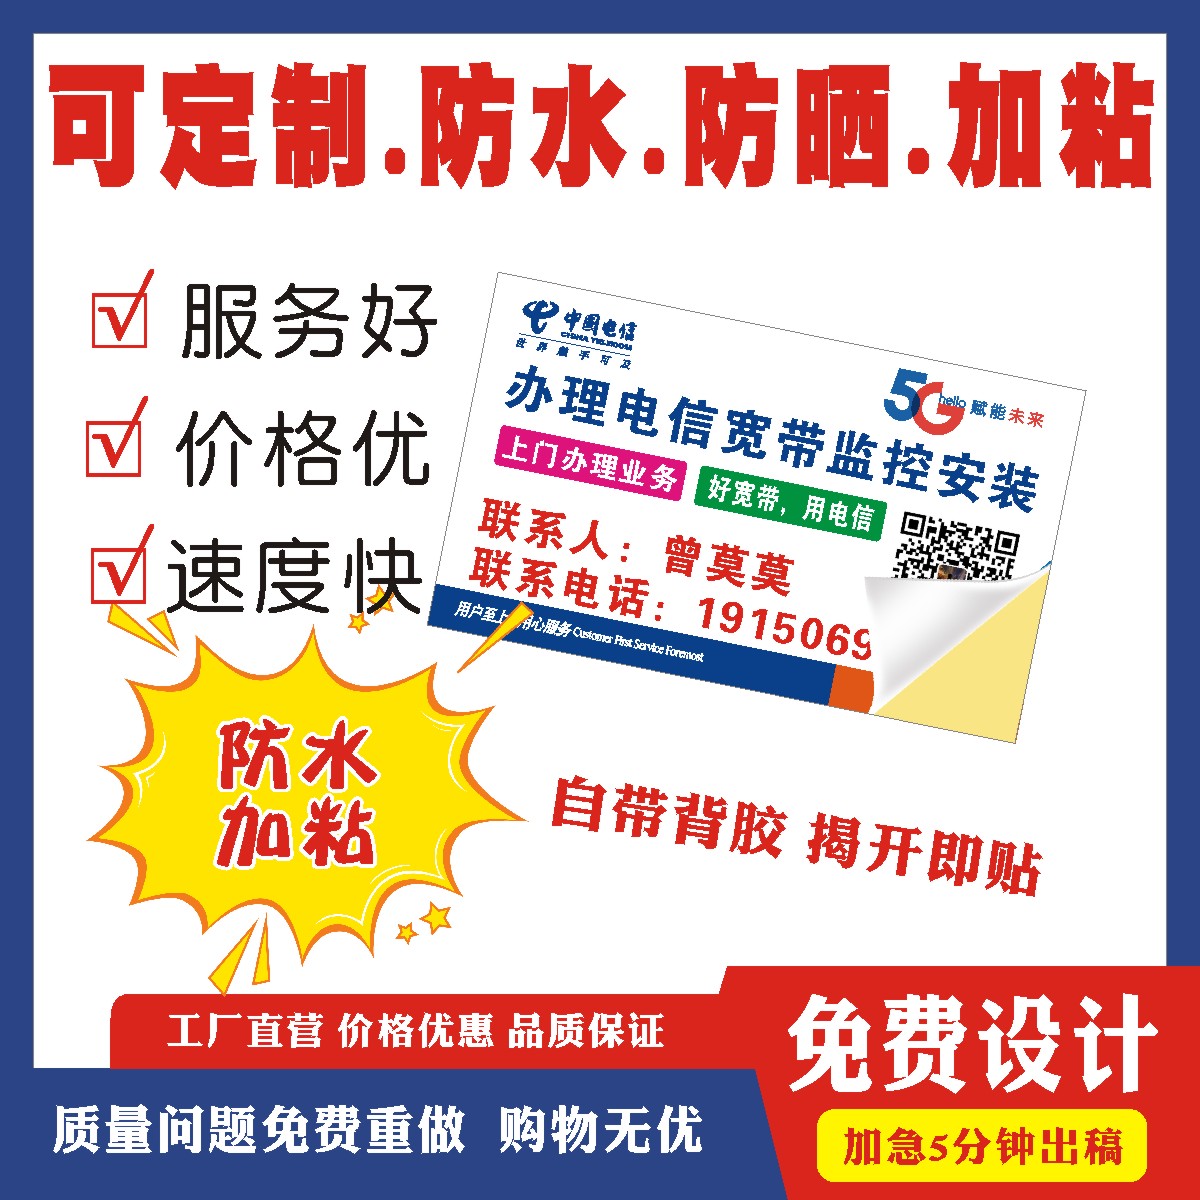 中国电信宽带不干胶贴纸移动联通光猫贴纸定做可黏贴小广告名片贴